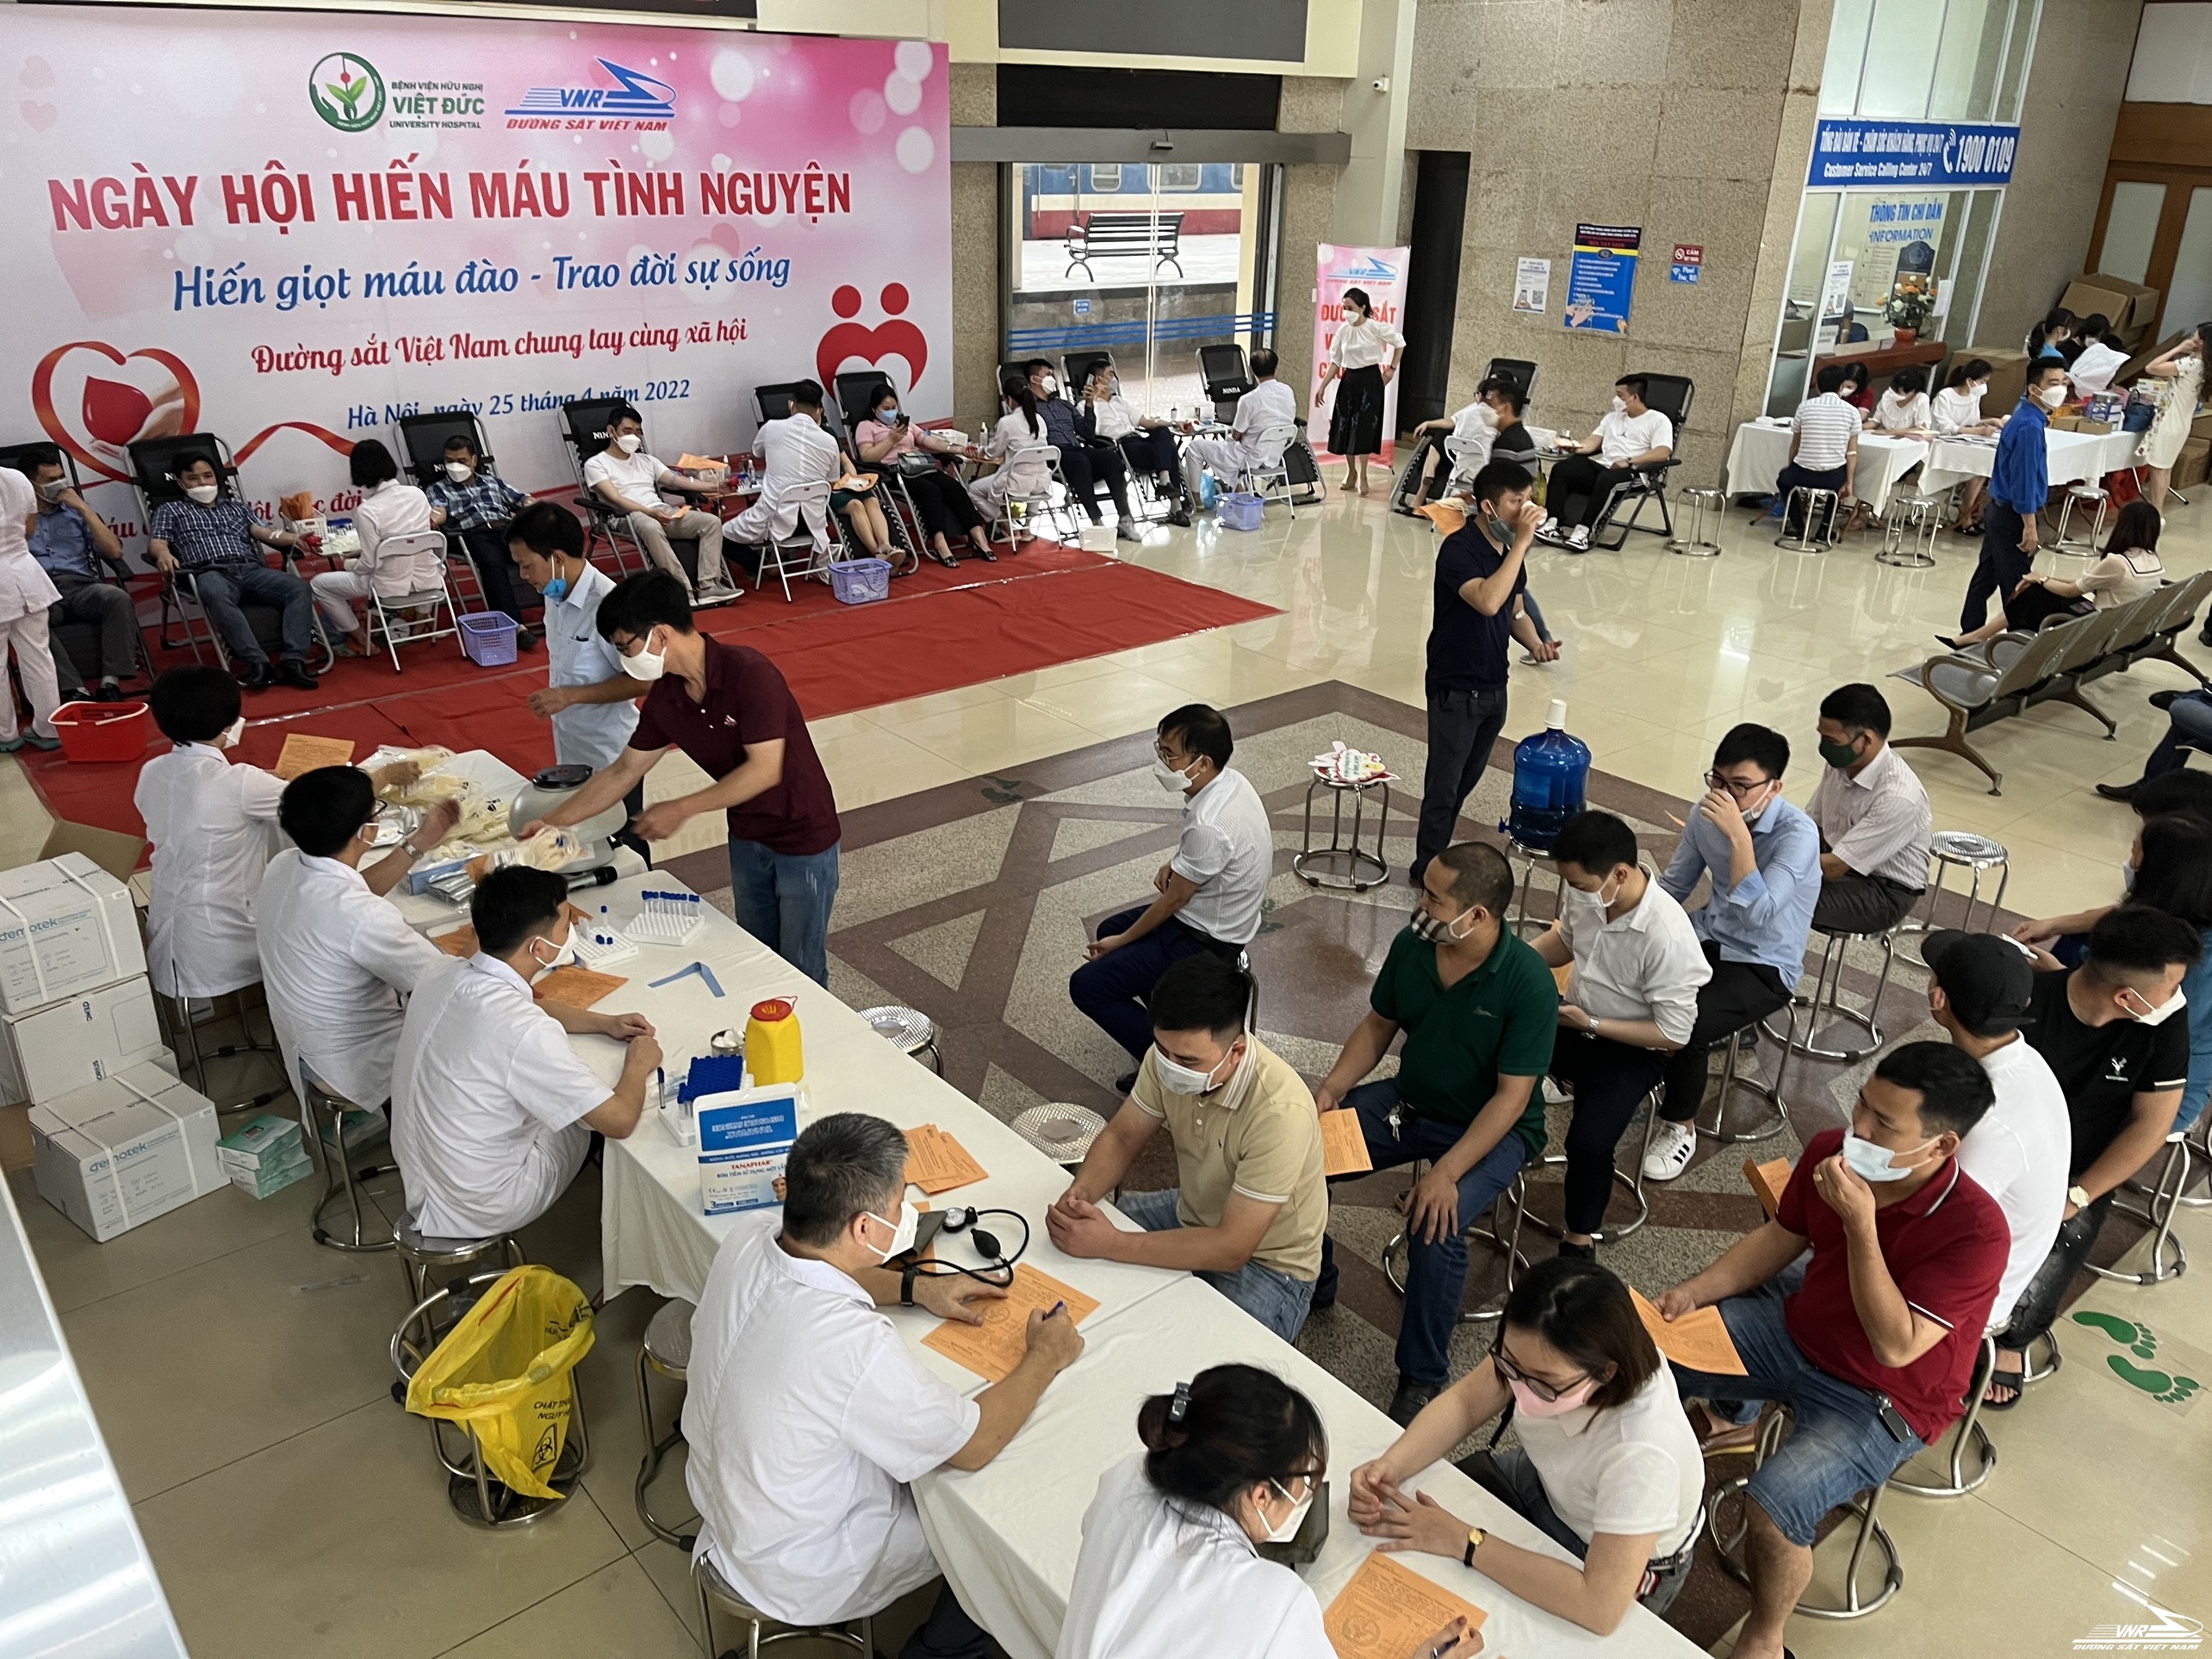 Ngày hội hiến máu tình nguyện năm 2022 các đơn vị ĐS khu vực Hà Nội